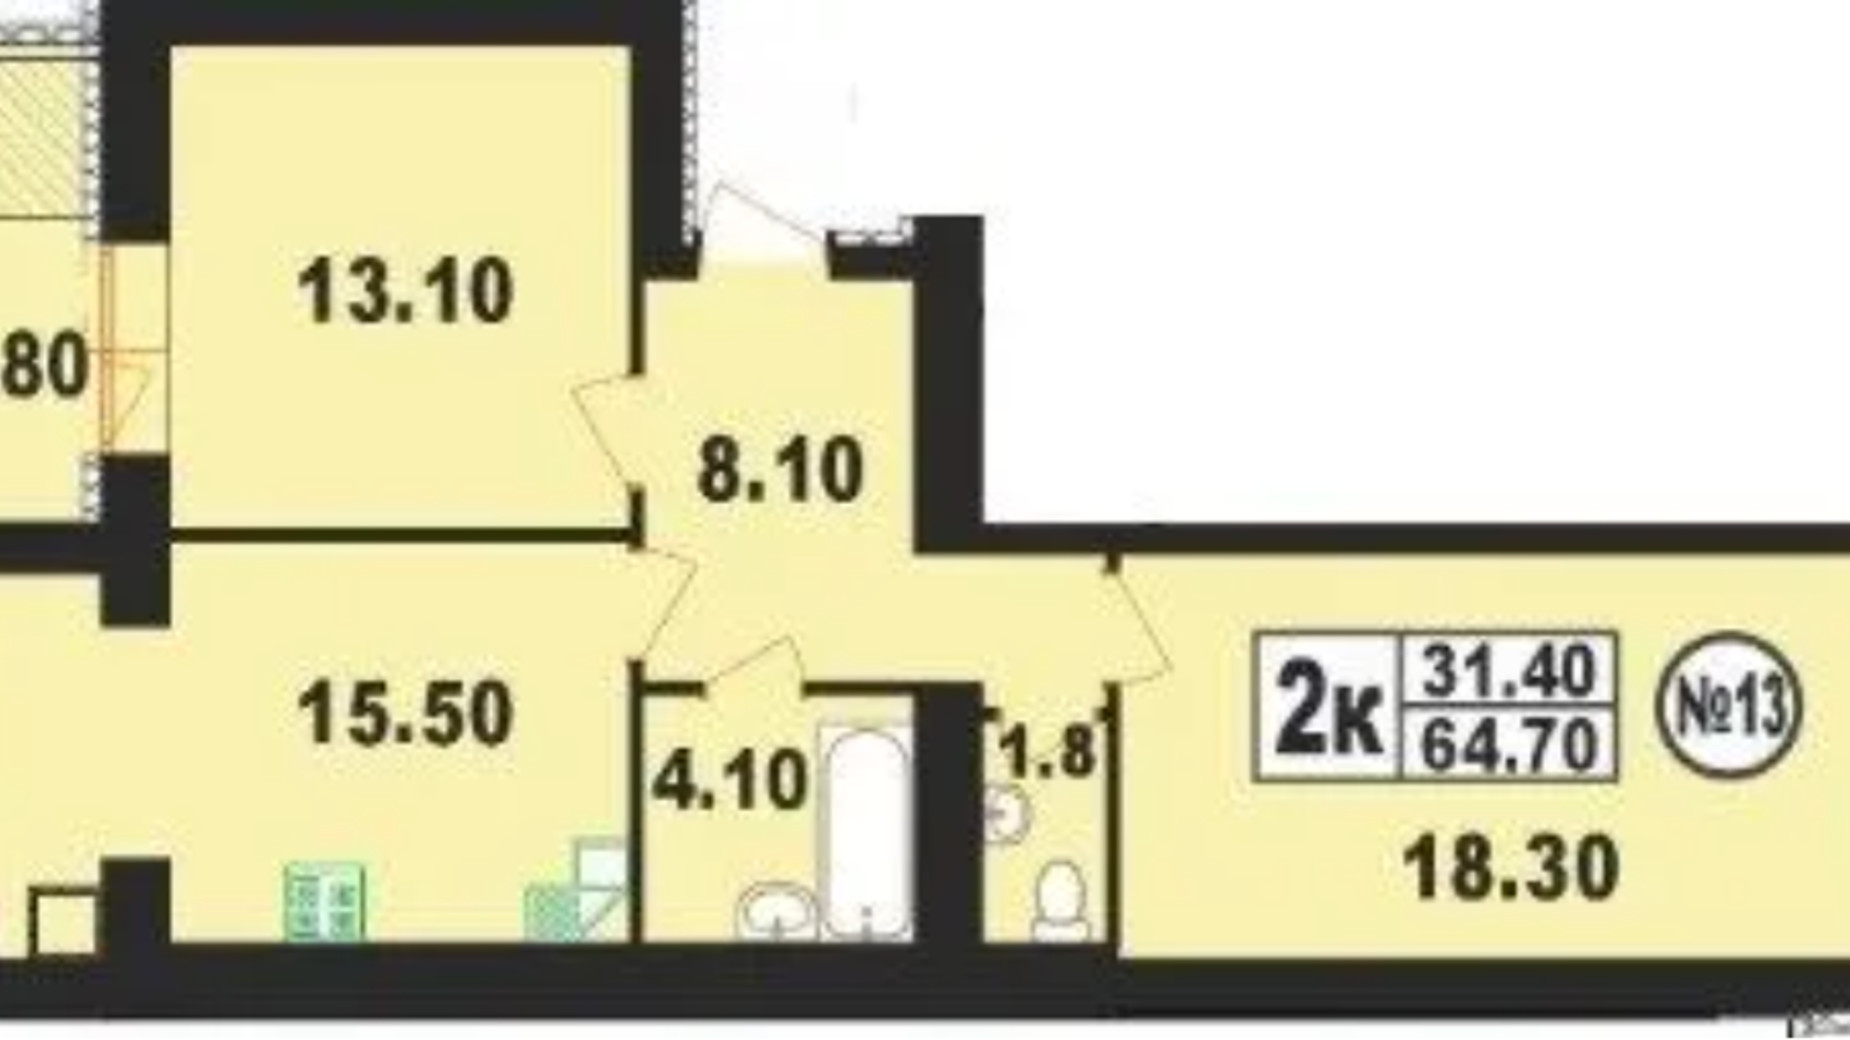 Планування 2-кімнатної квартири в ЖК вул. Степана Бандери, 80 64.7 м², фото 612774